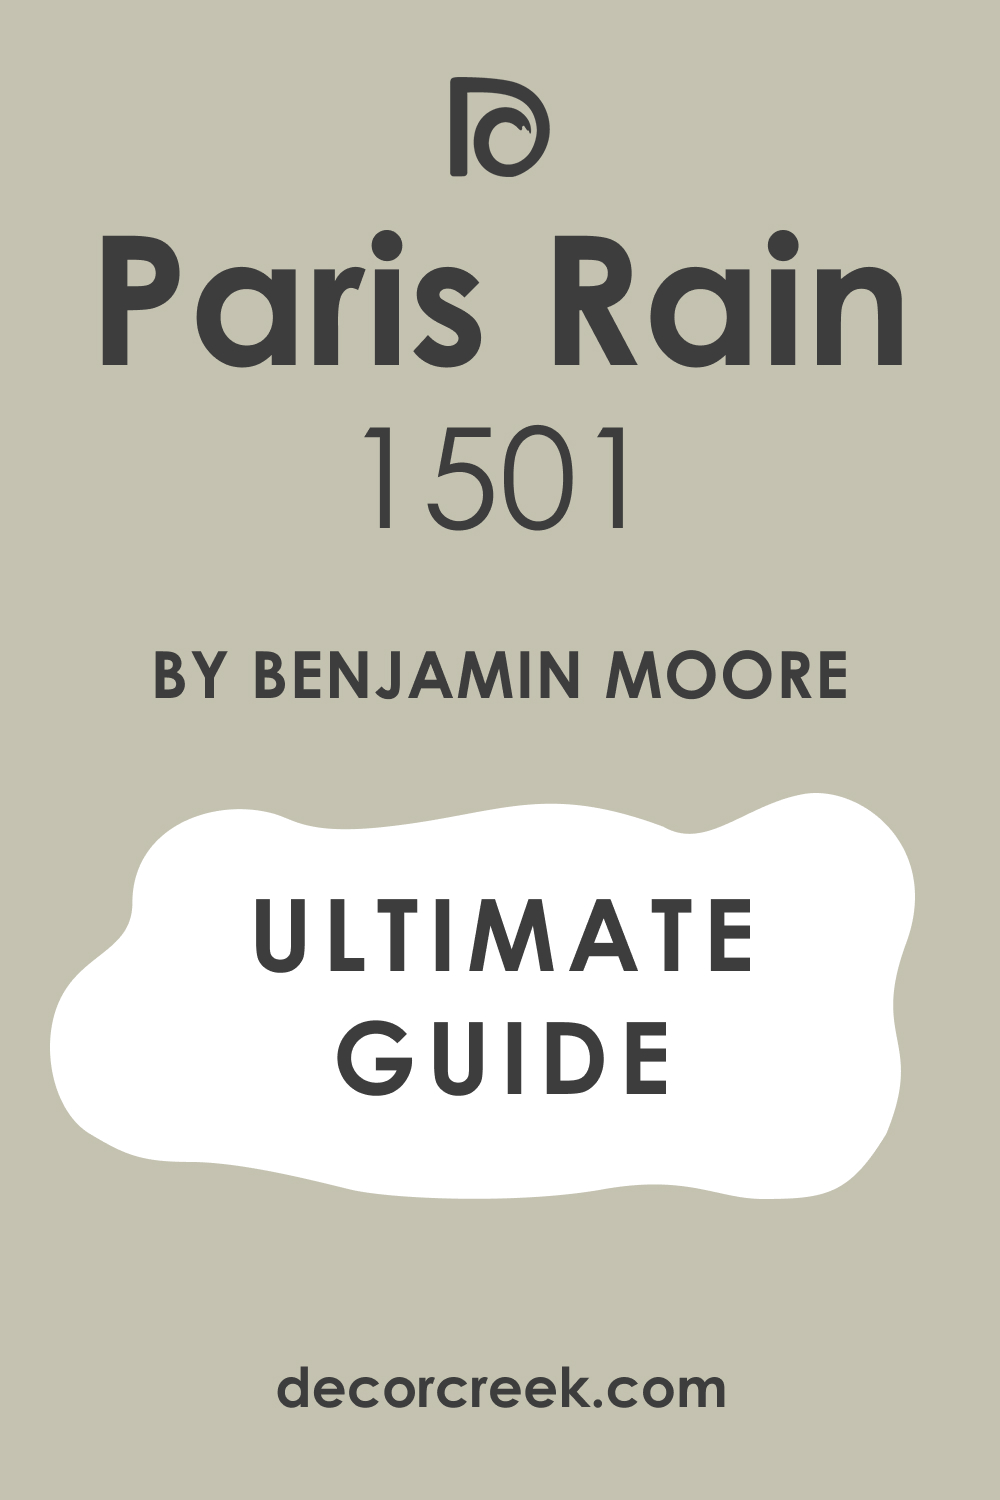 Ultimate Guide of Paris Rain 1501